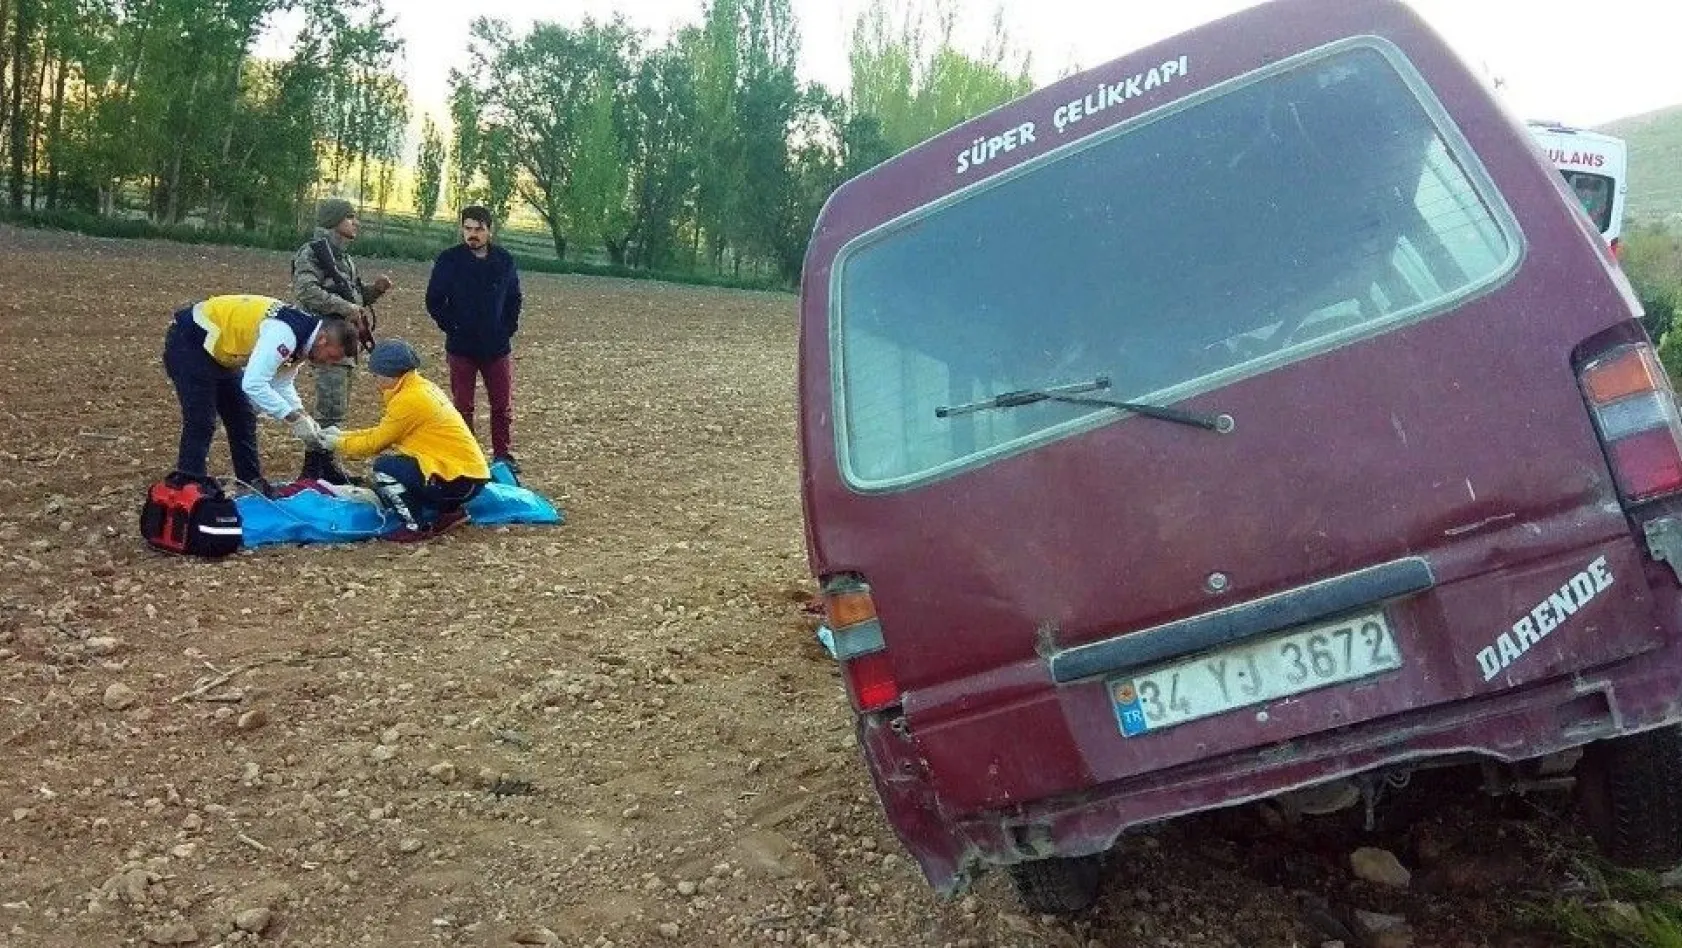 Kahramanmaraş'ta trafik kazası: 1 ölü
